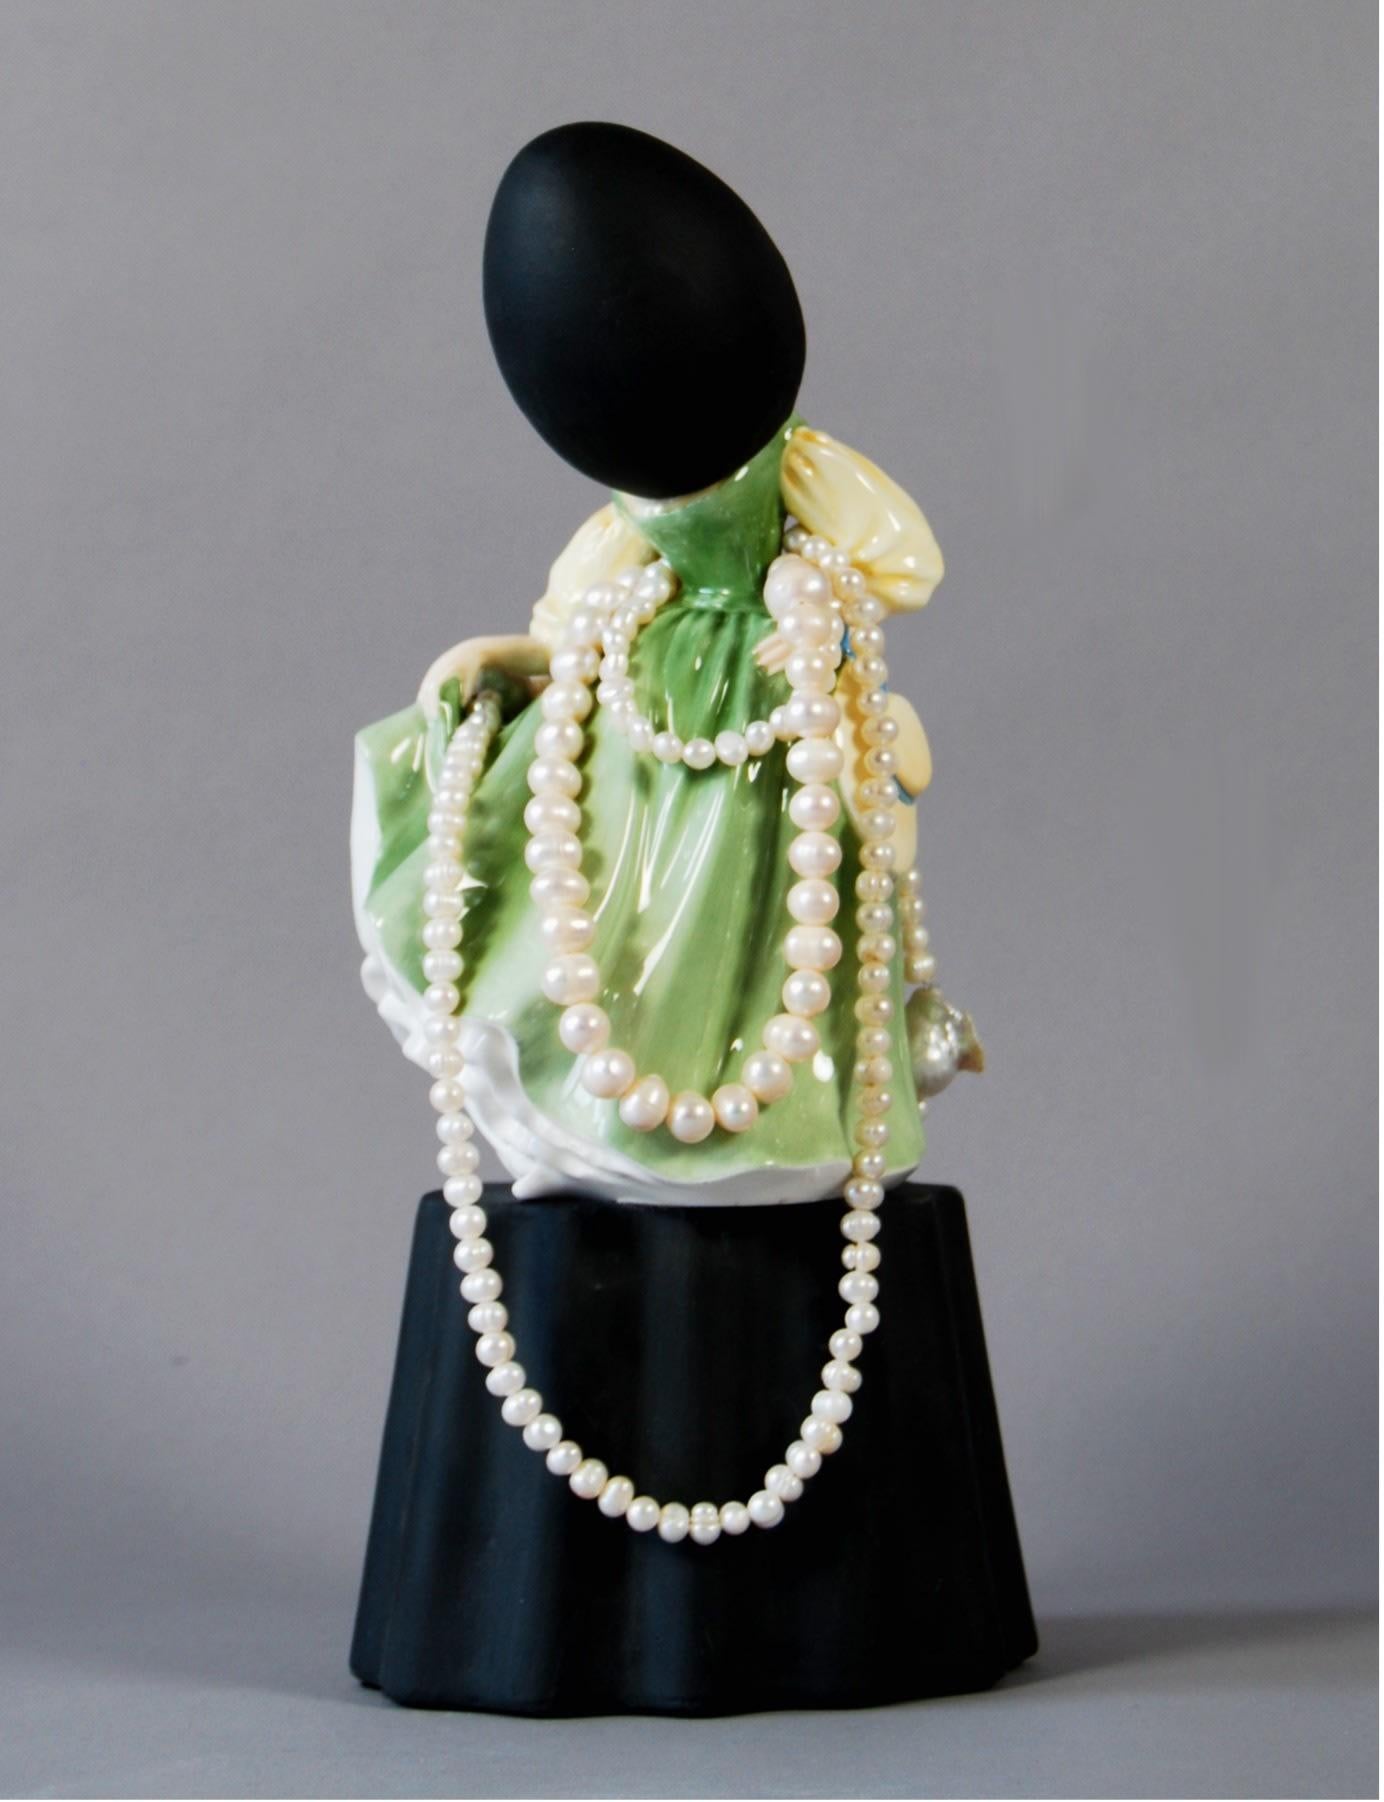 MATT SMITH (BRITANNIQUE)
Étude en vert avec des perles, 2021
Paria noir, céramique trouvée, perles d'eau douce
29 x 14 x 14 cm
11 1/2 x 5 1/2 x 5 1/2 in.
(MS206)
£ 4,000.00


Matt Smith, né au Royaume-Uni, est bien connu pour son travail spécifique